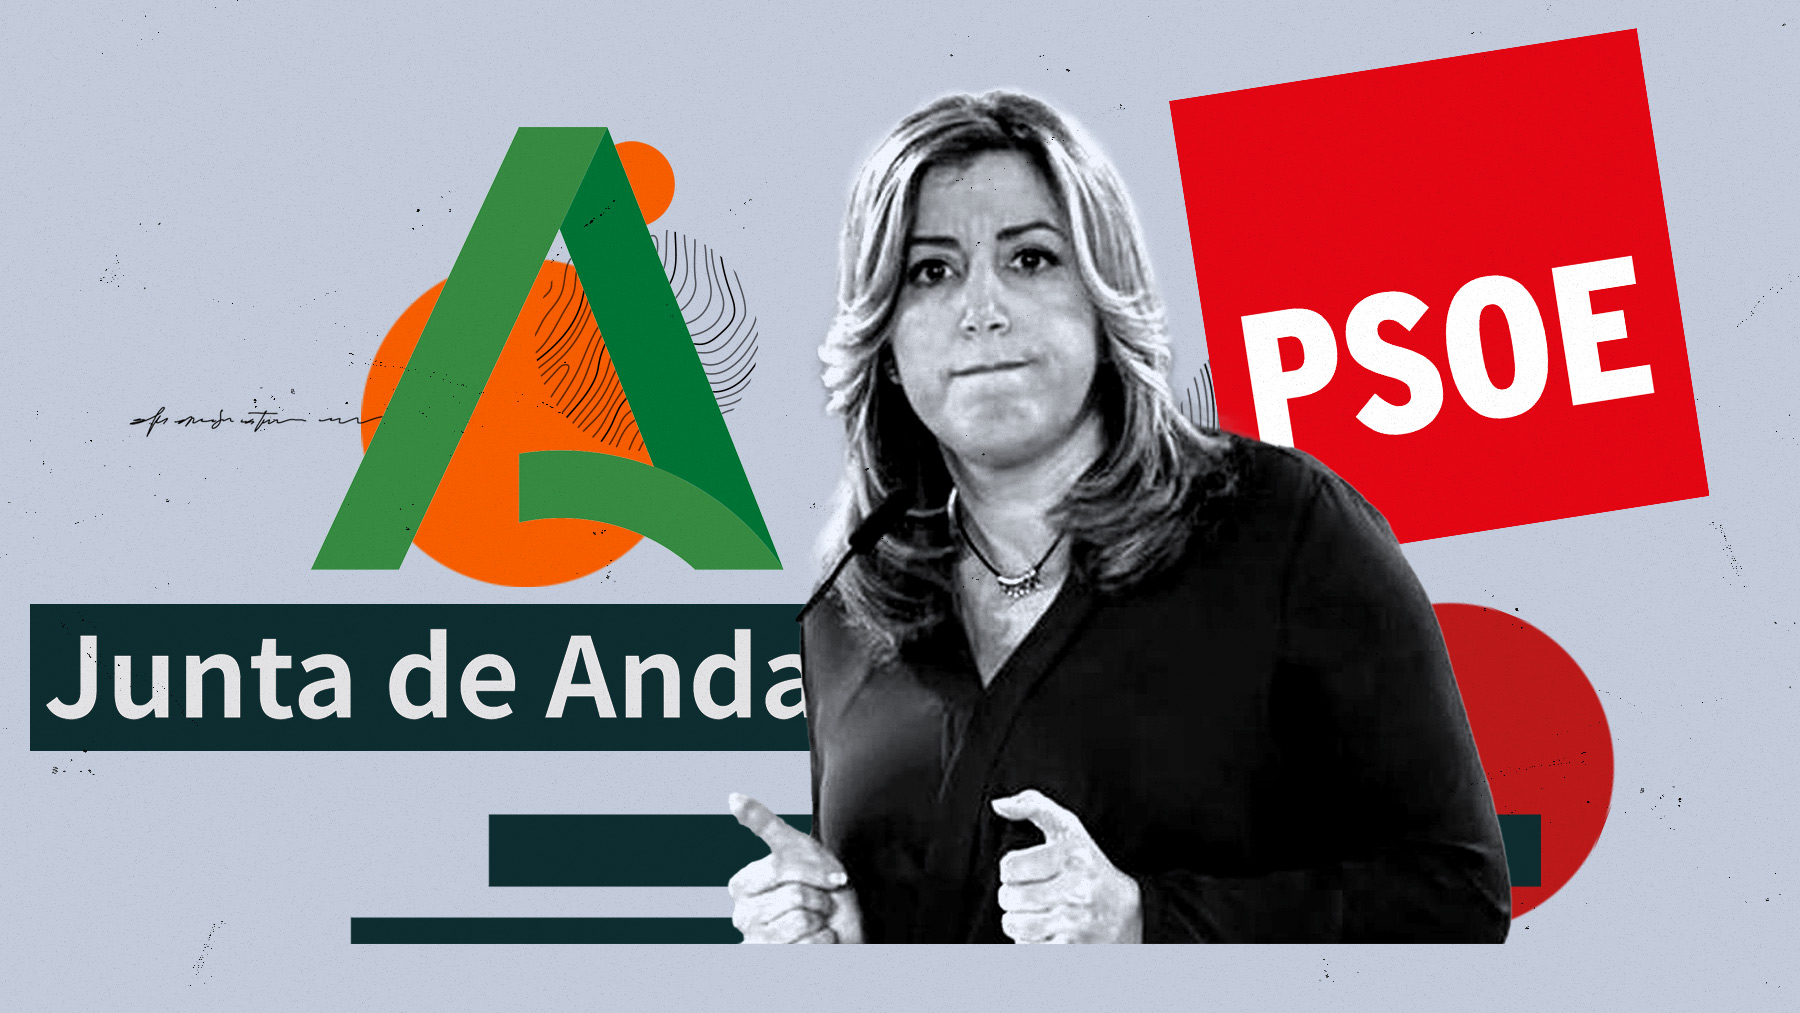 Las irregularidades que investiga el Tribunal de Cuentas se produjeron en la Junta de Andalucía cuando gobernaba la socialista Susana Díaz